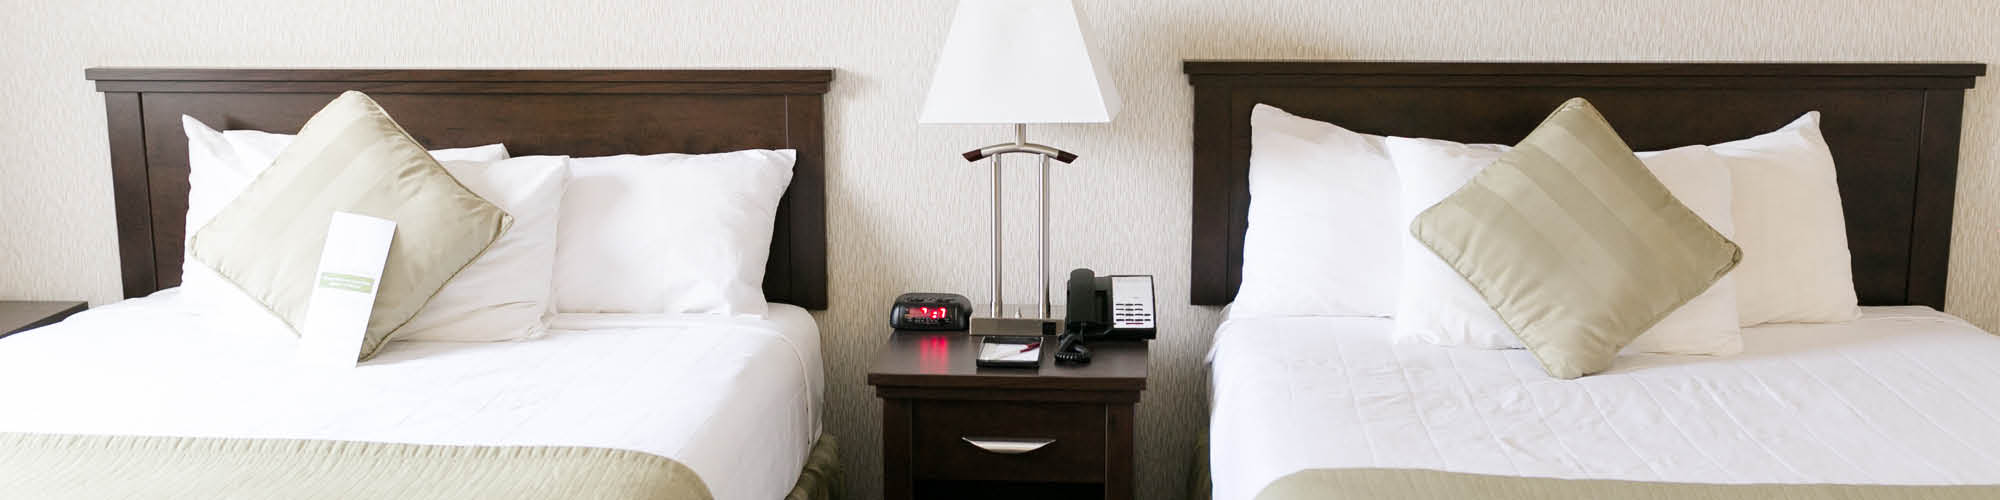 Winnipeg hotel guest room with double queen beds